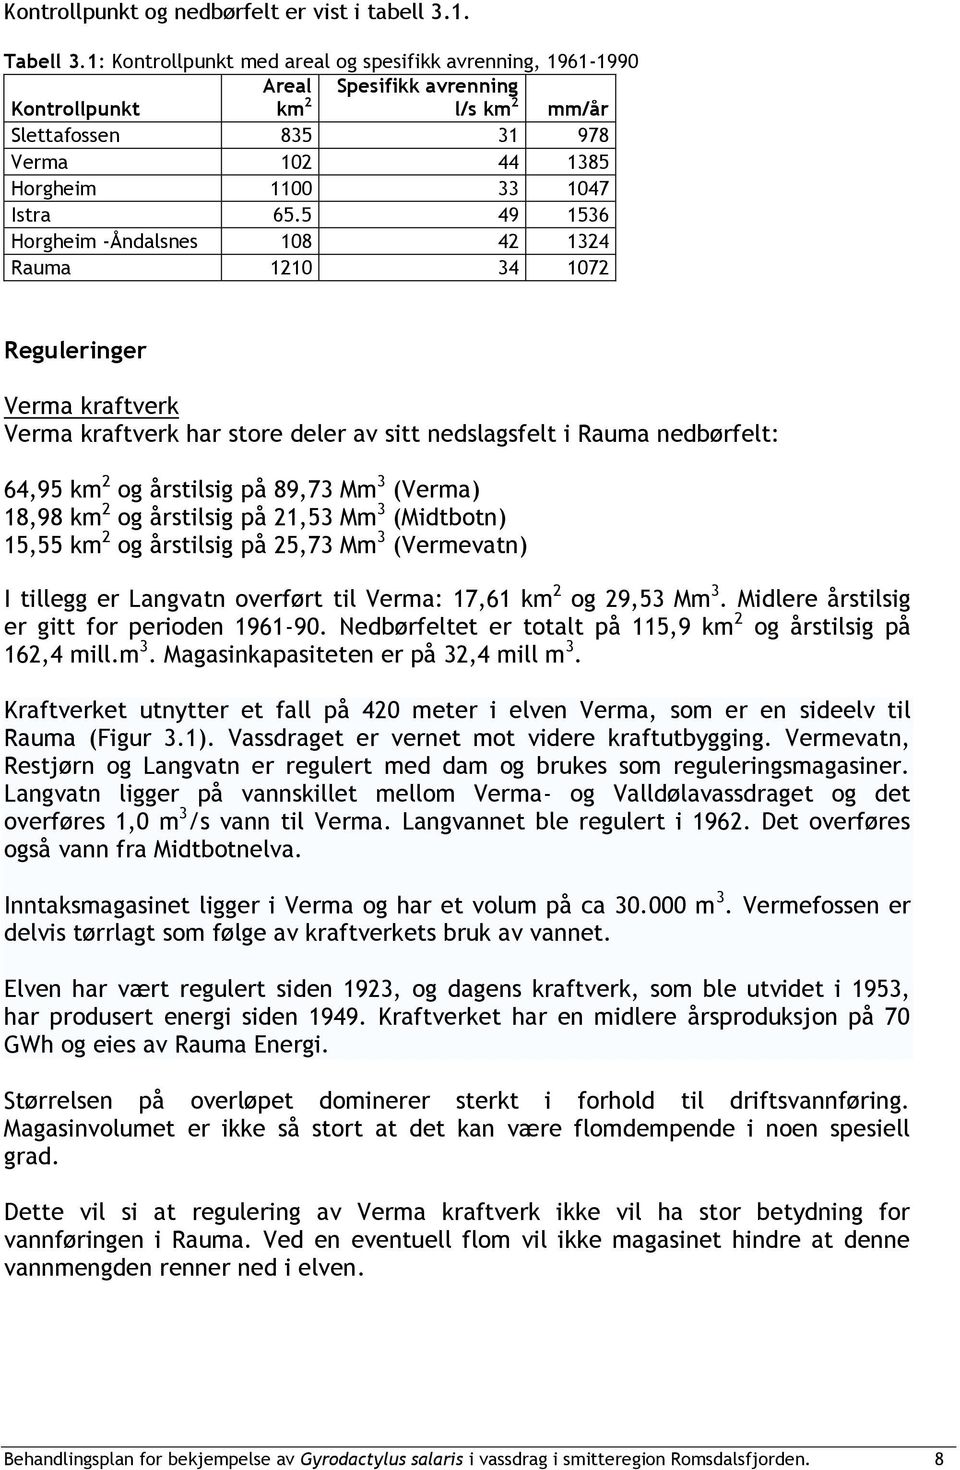 5 49 1536 Horgheim -Åndalsnes 108 42 1324 Rauma 1210 34 1072 Reguleringer Verma kraftverk Verma kraftverk har store deler av sitt nedslagsfelt i Rauma nedbørfelt: 64,95 km 2 og årstilsig på 89,73 Mm